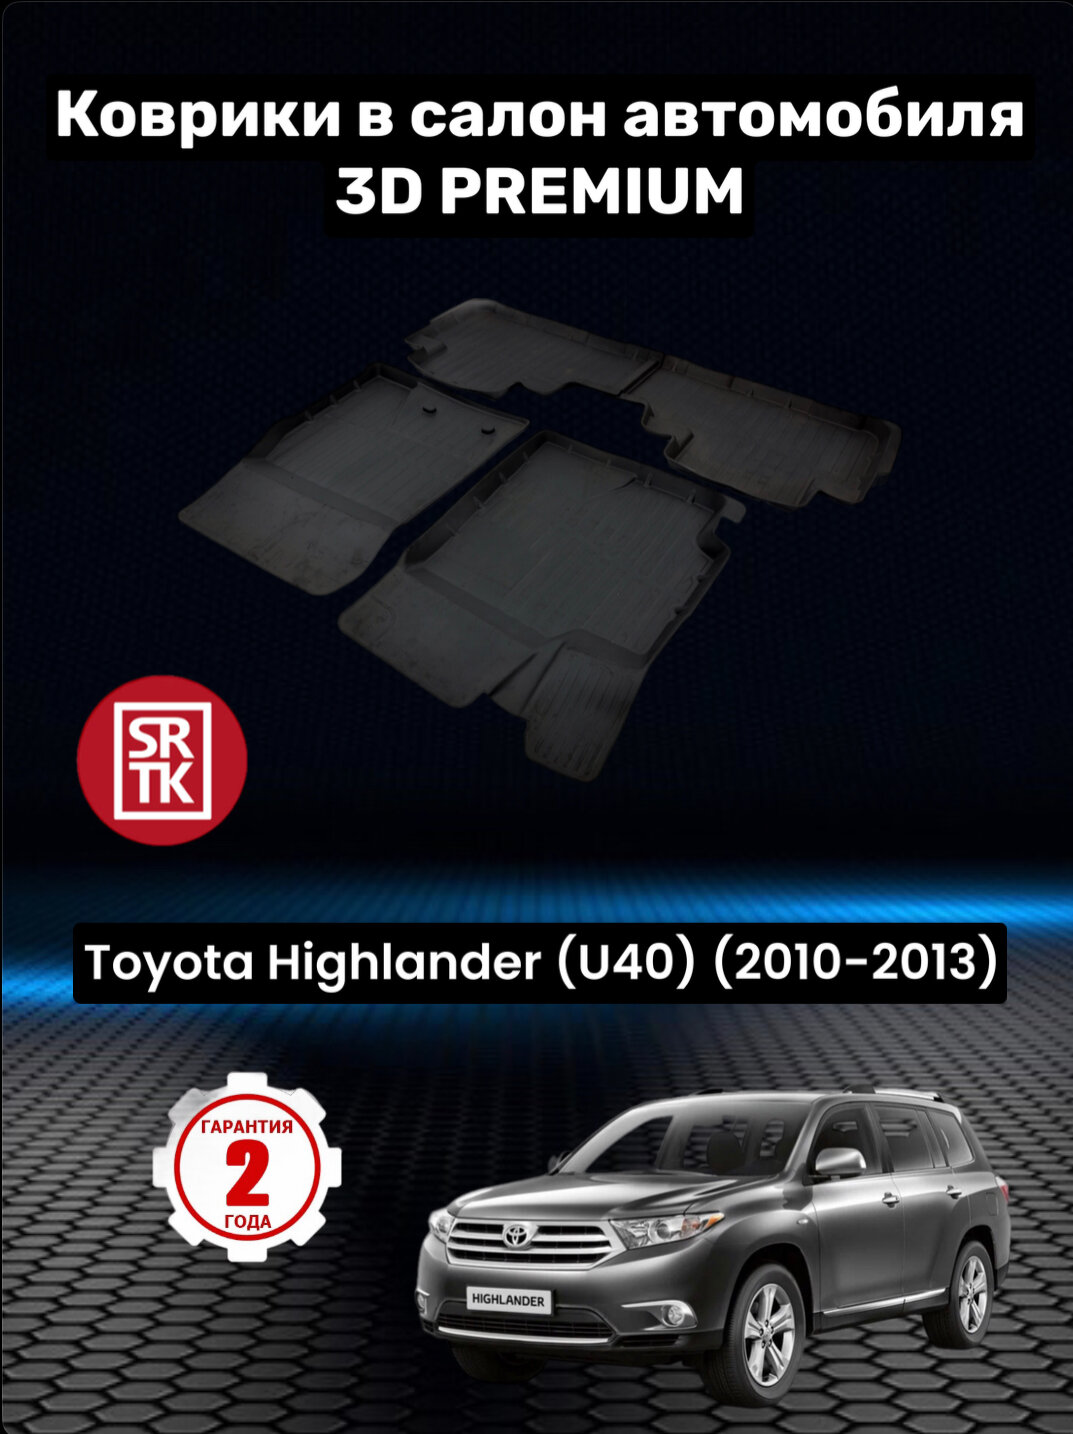 Коврики резиновые в салон для Тойота Хайлендер/Toyota Highlander U40 (2010-2013) 3D PREMIUM SRTK (Саранск) комплект в салон